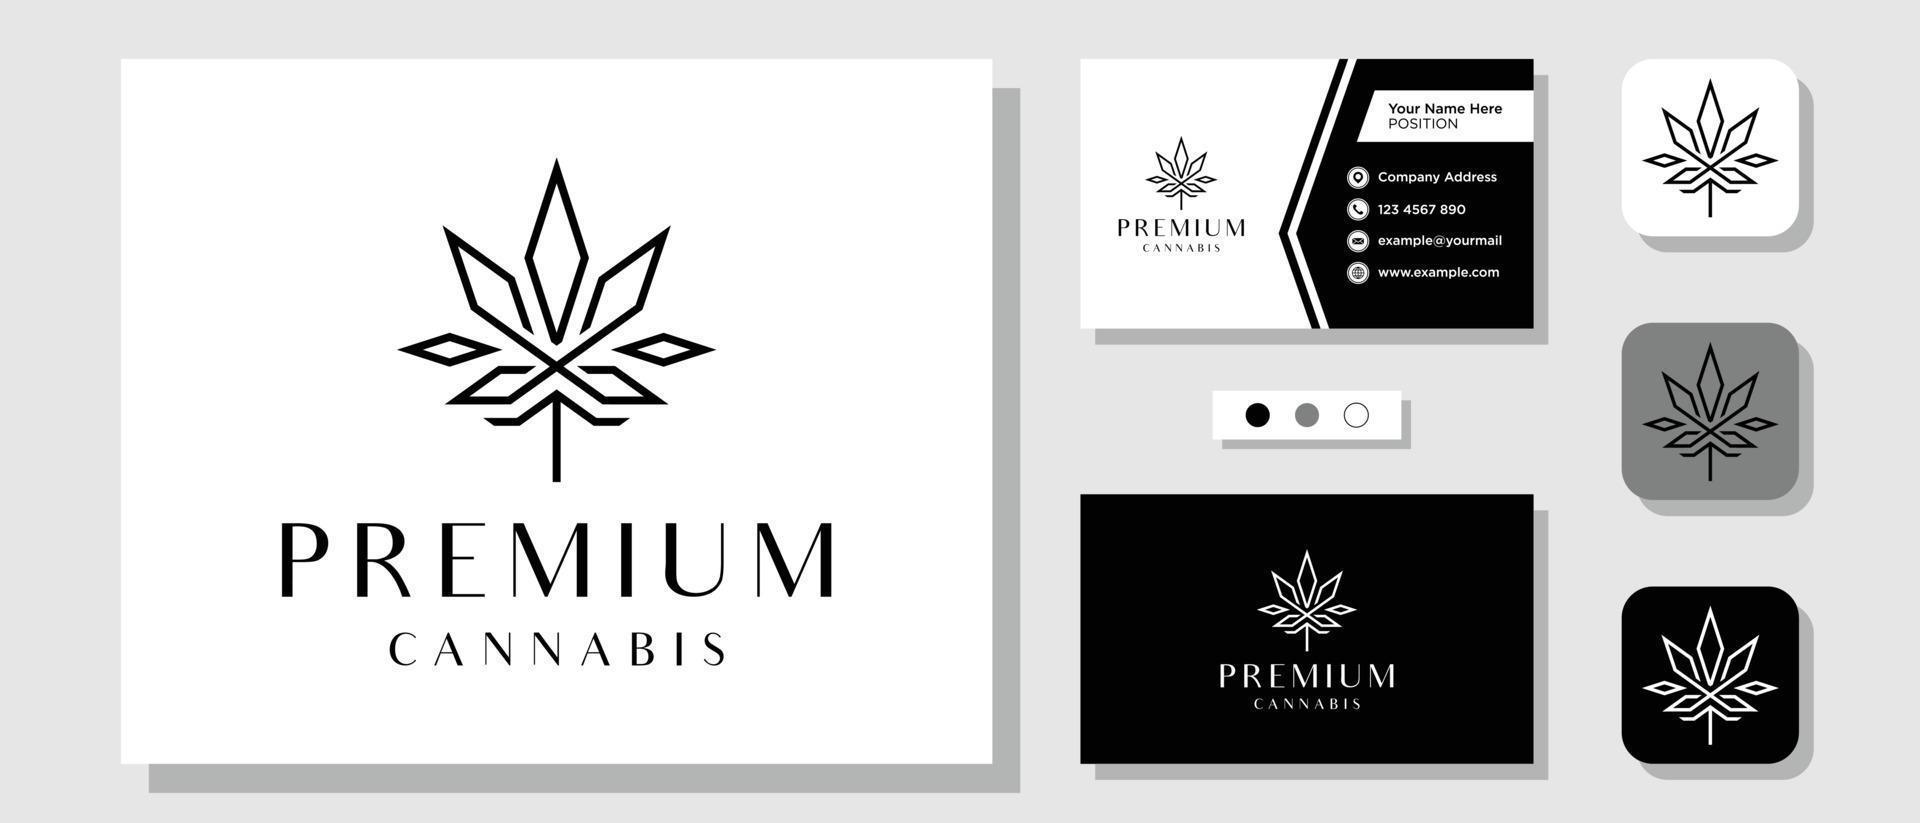 Luxus-Cannabis-Hanf-Droge Weed King Royal Premium-Logo-Design mit Layout-Vorlagen-Visitenkarte vektor